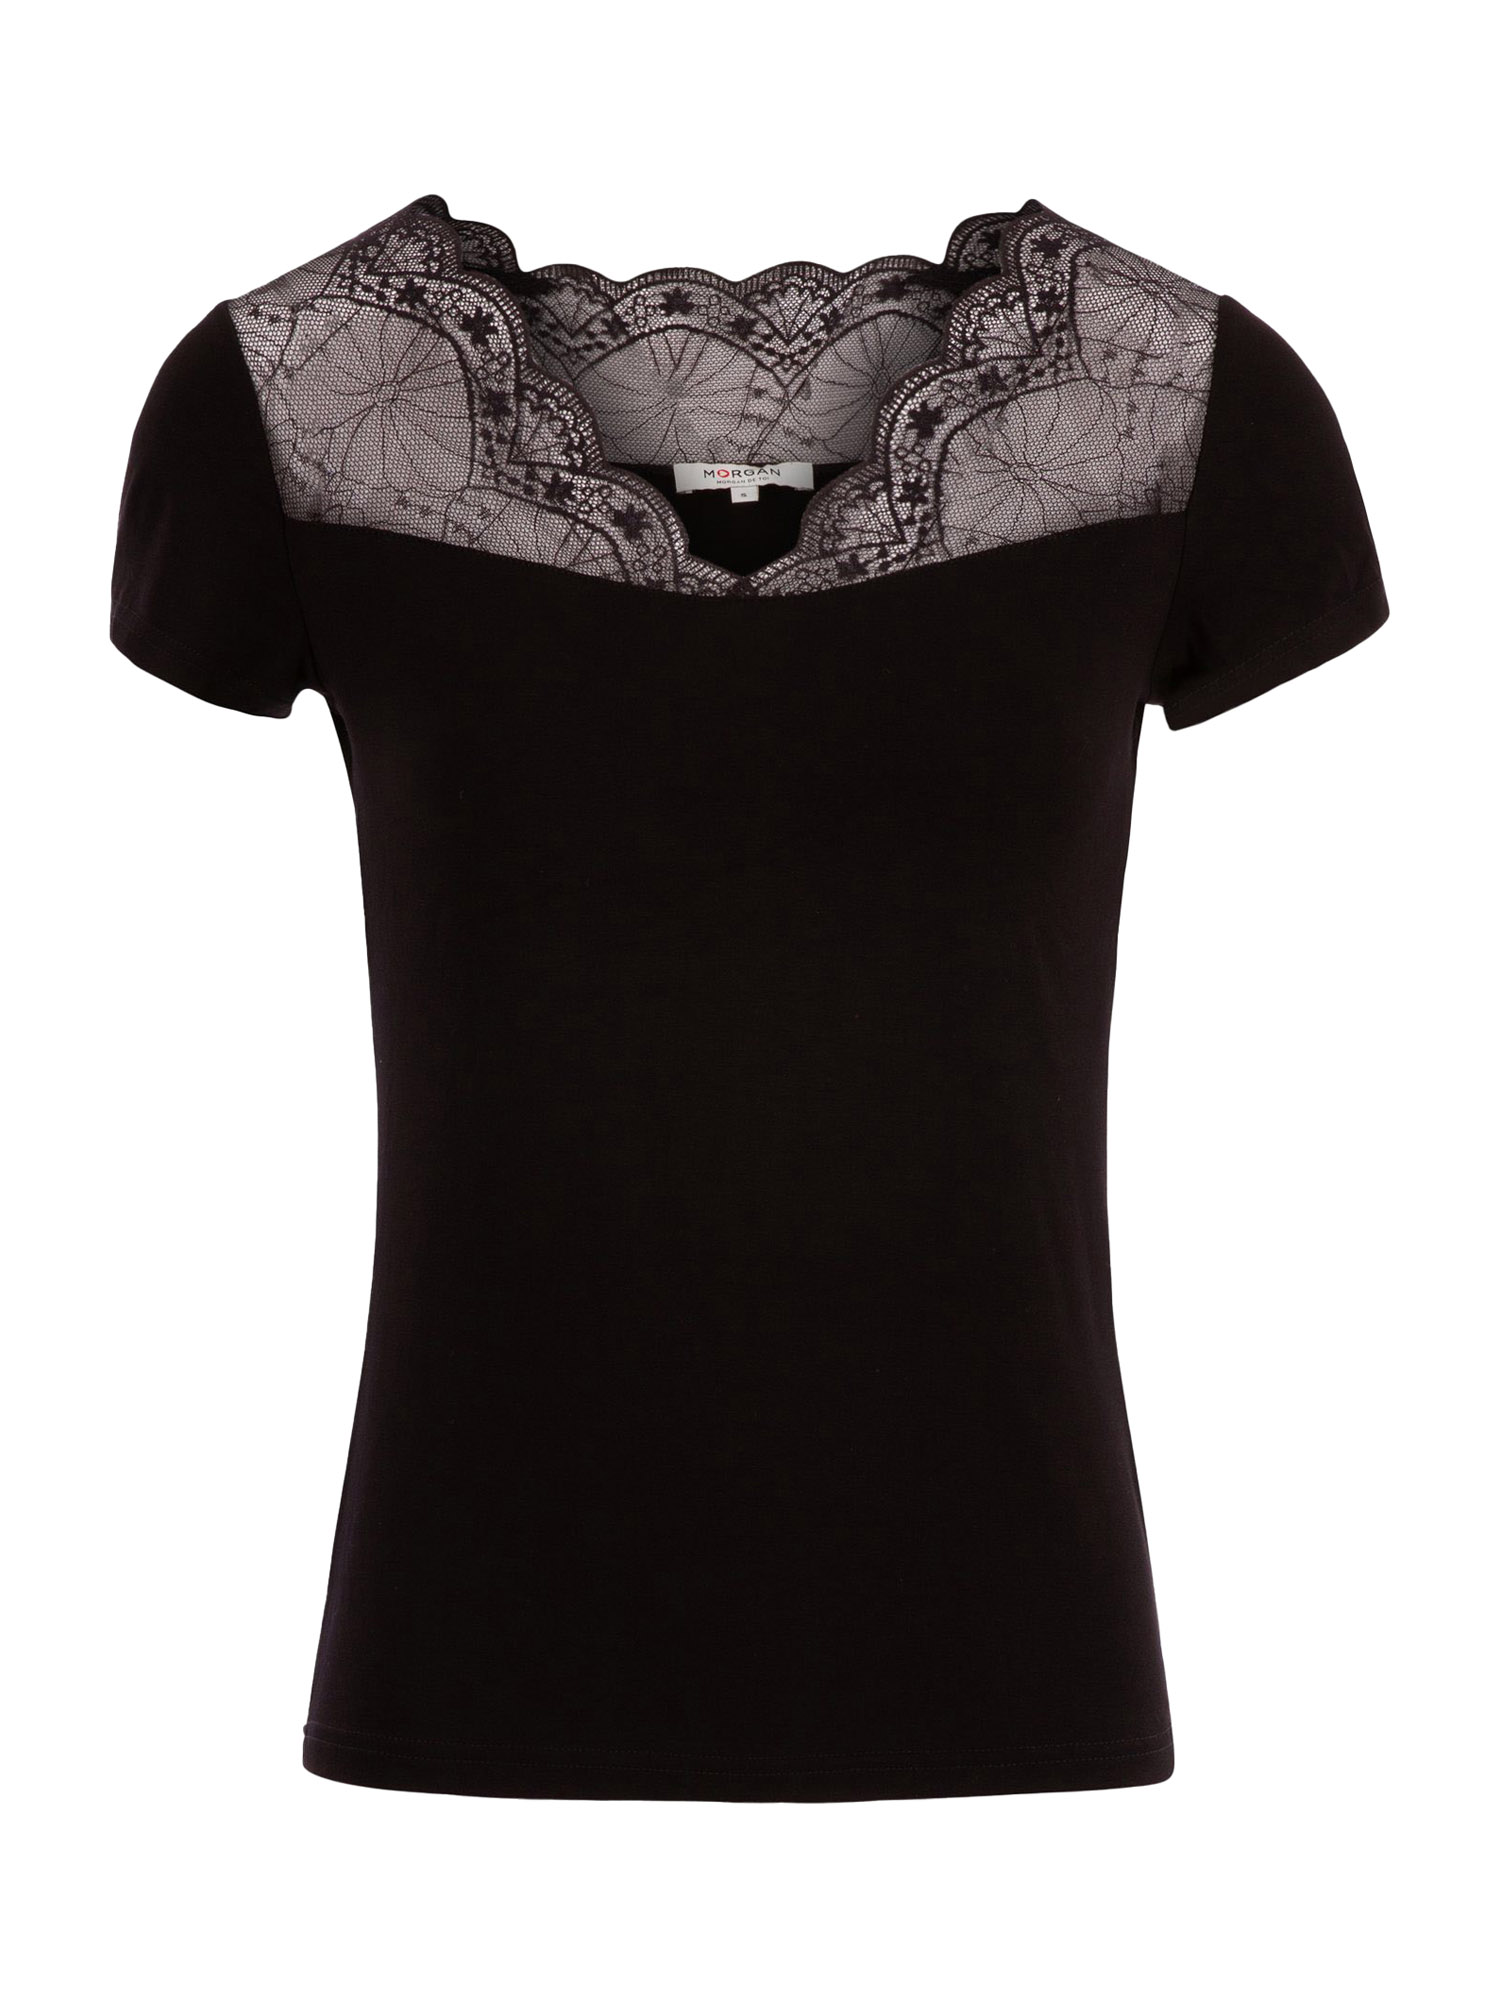 Odzież Koszulki & topy Morgan Koszulka LARY w kolorze Czarnym 